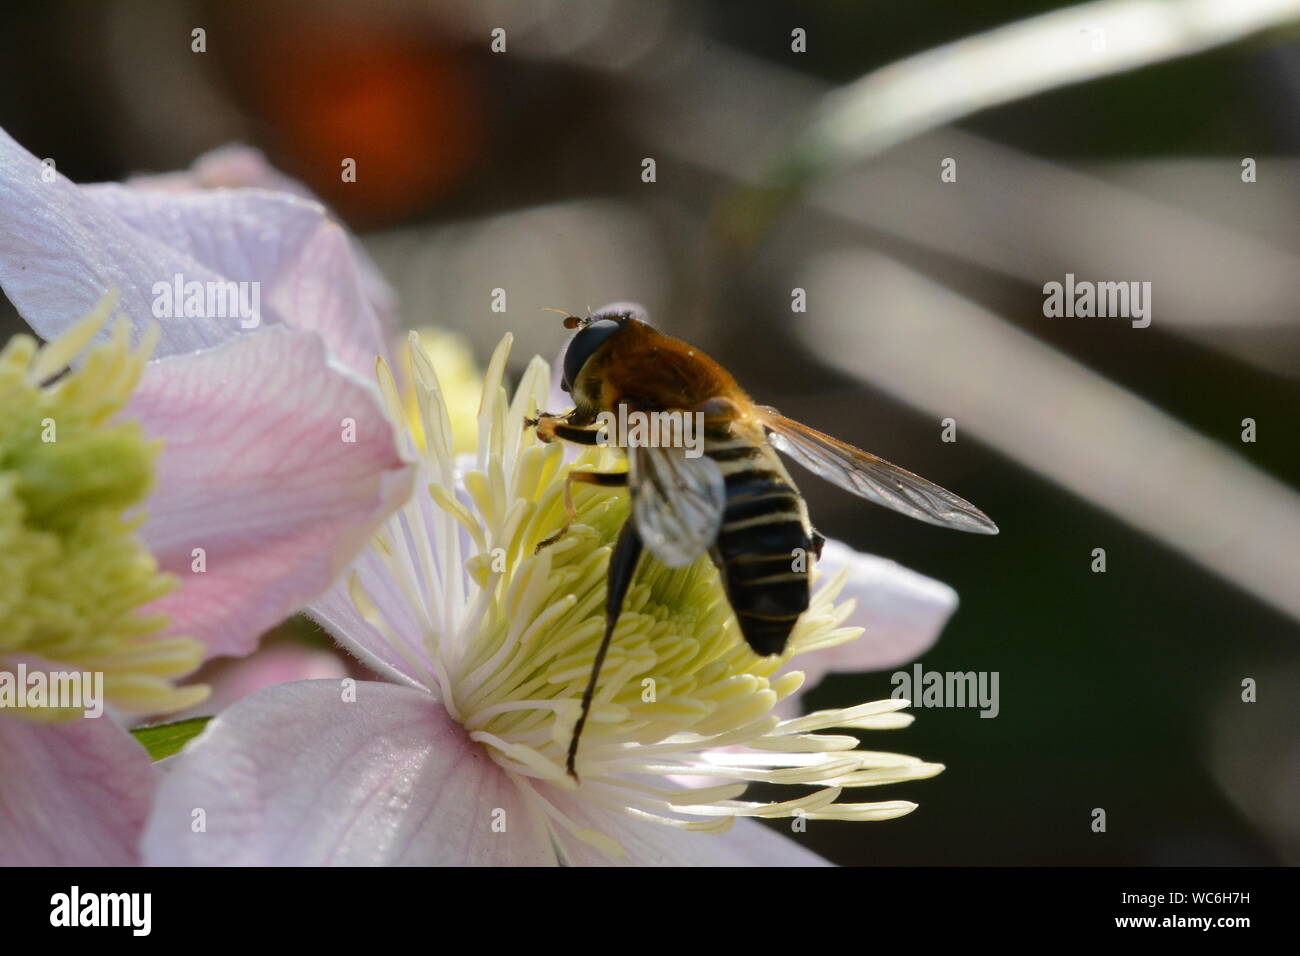 Dettaglio colpo di ape su fiori Foto Stock